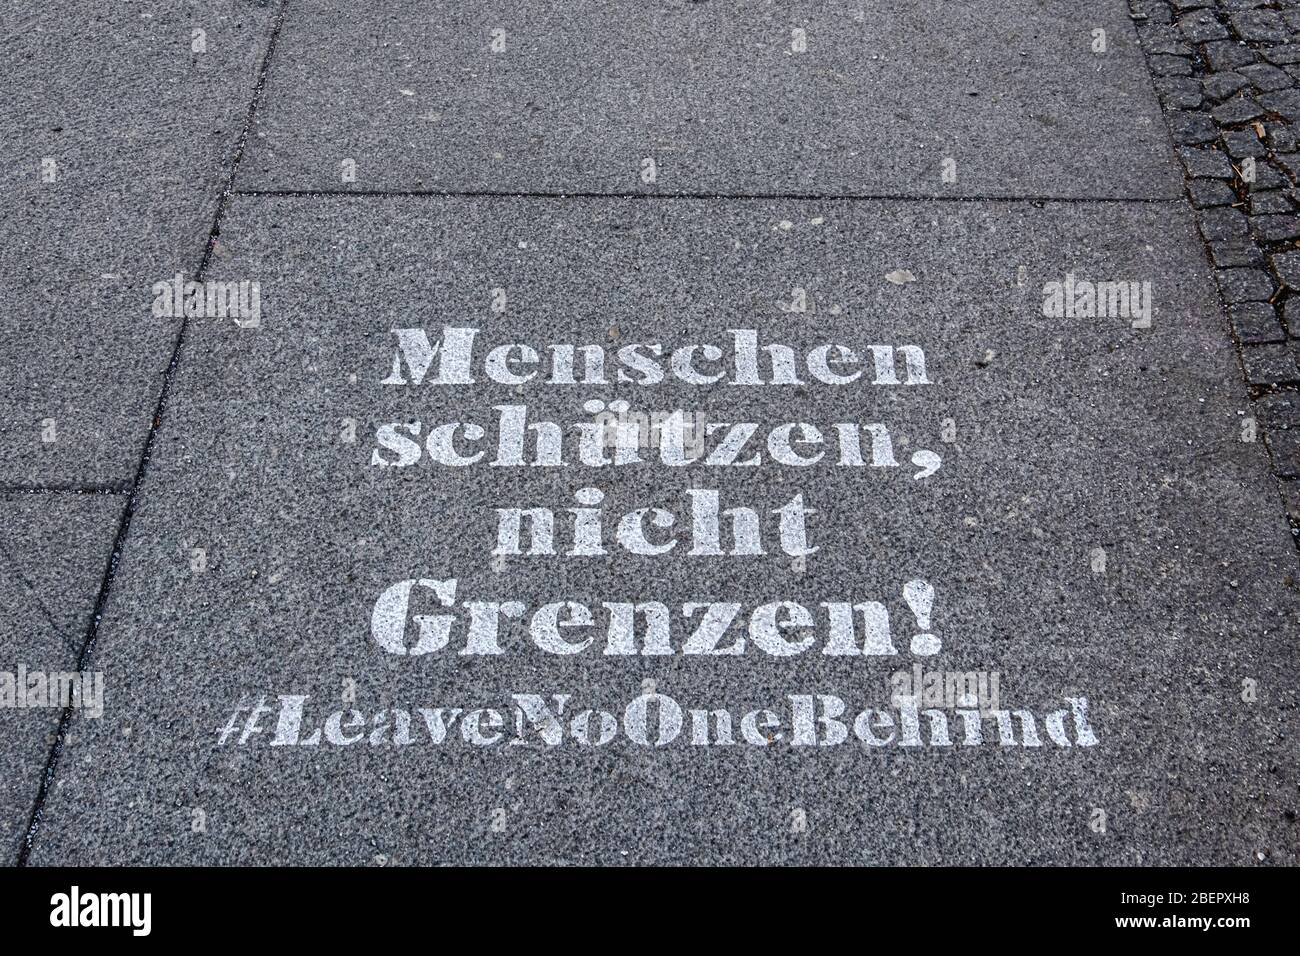 Berlin, Mitte, COVID-19 pandemic.Stencilled message on pavement. Menschen Schutzen nicht grenzen. #Leave No-one behind Stock Photo